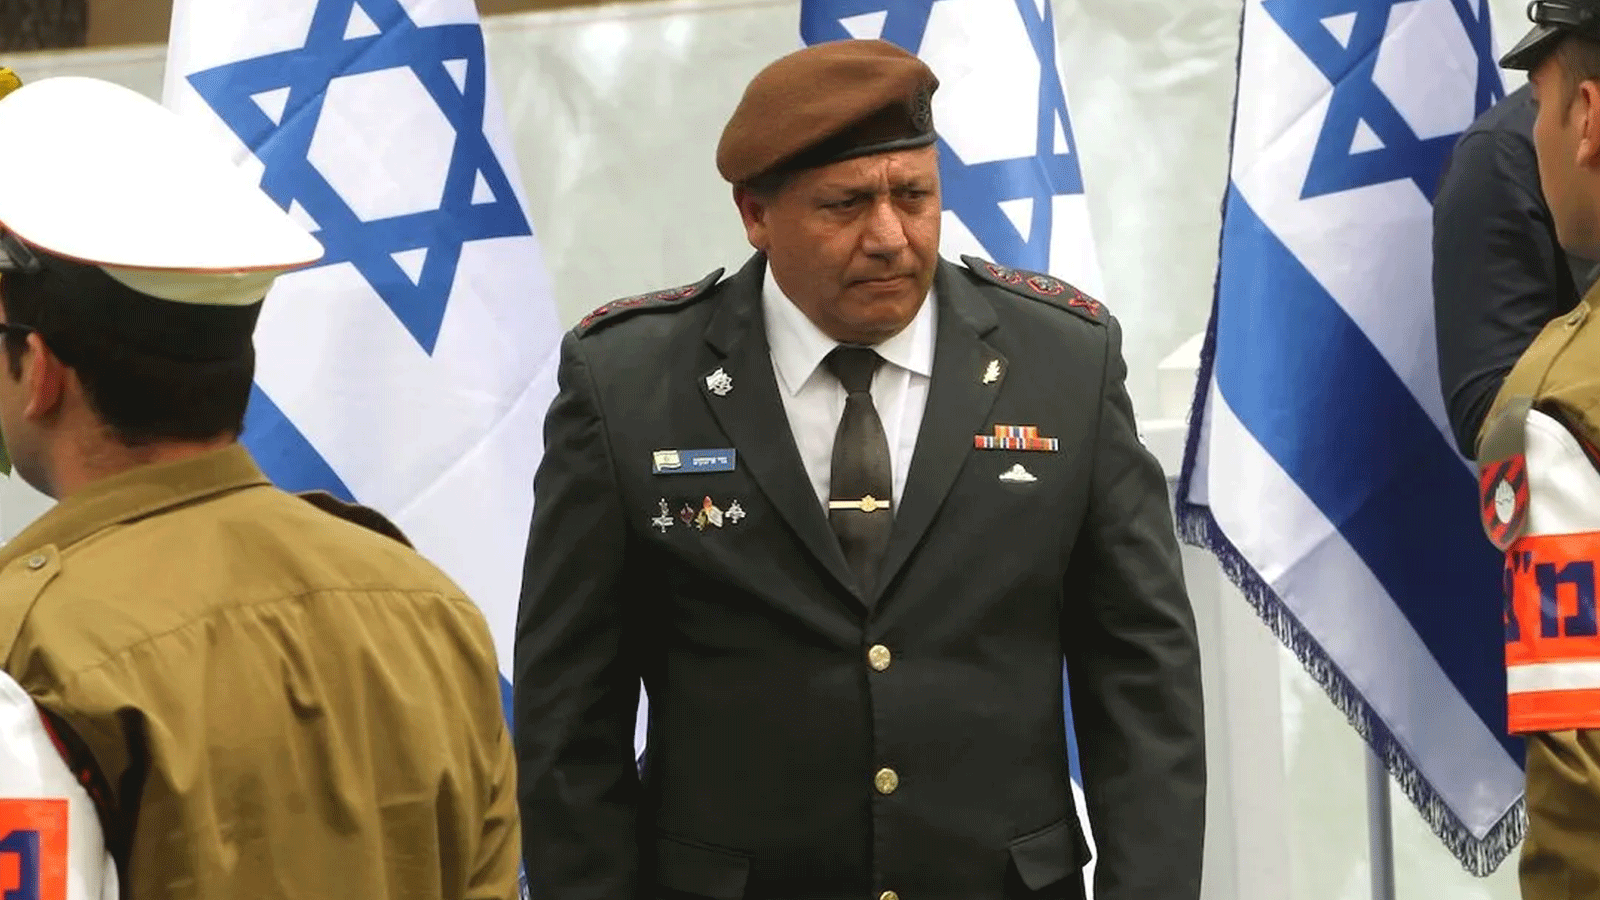 رئيس الأركان الإسرائيلي السابق غادي ايزنكوت يدخل الساحة السياسية